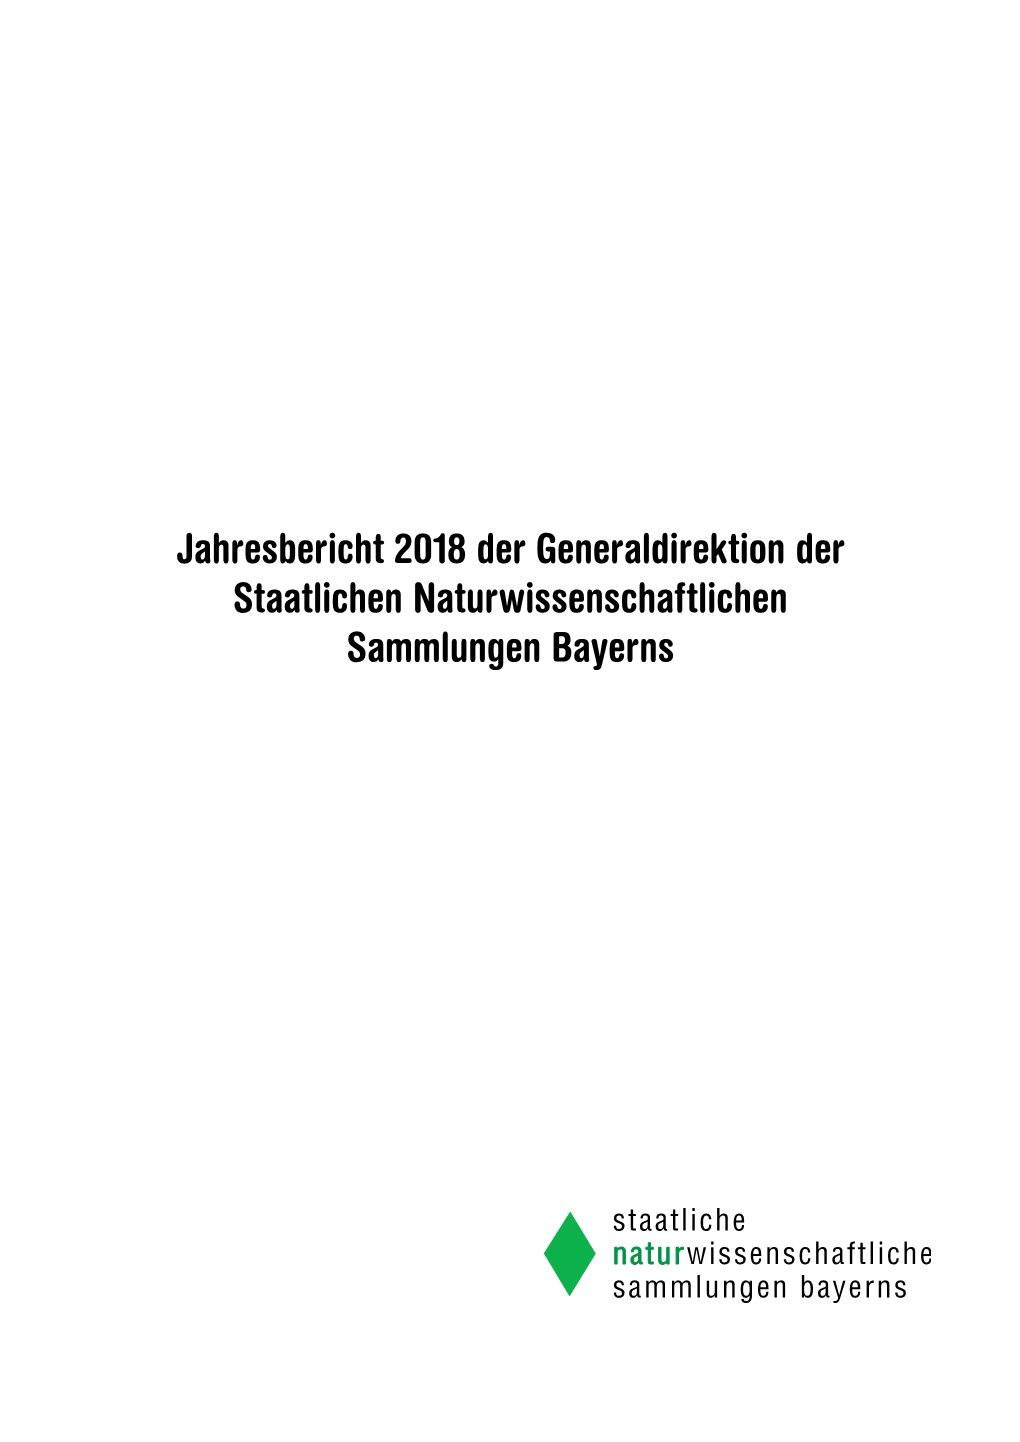 Jahresbericht 2018 Der Generaldirektion Der Staatlichen Naturwissenschaftlichen Sammlungen Bayerns Herausgegeben Von: Prof